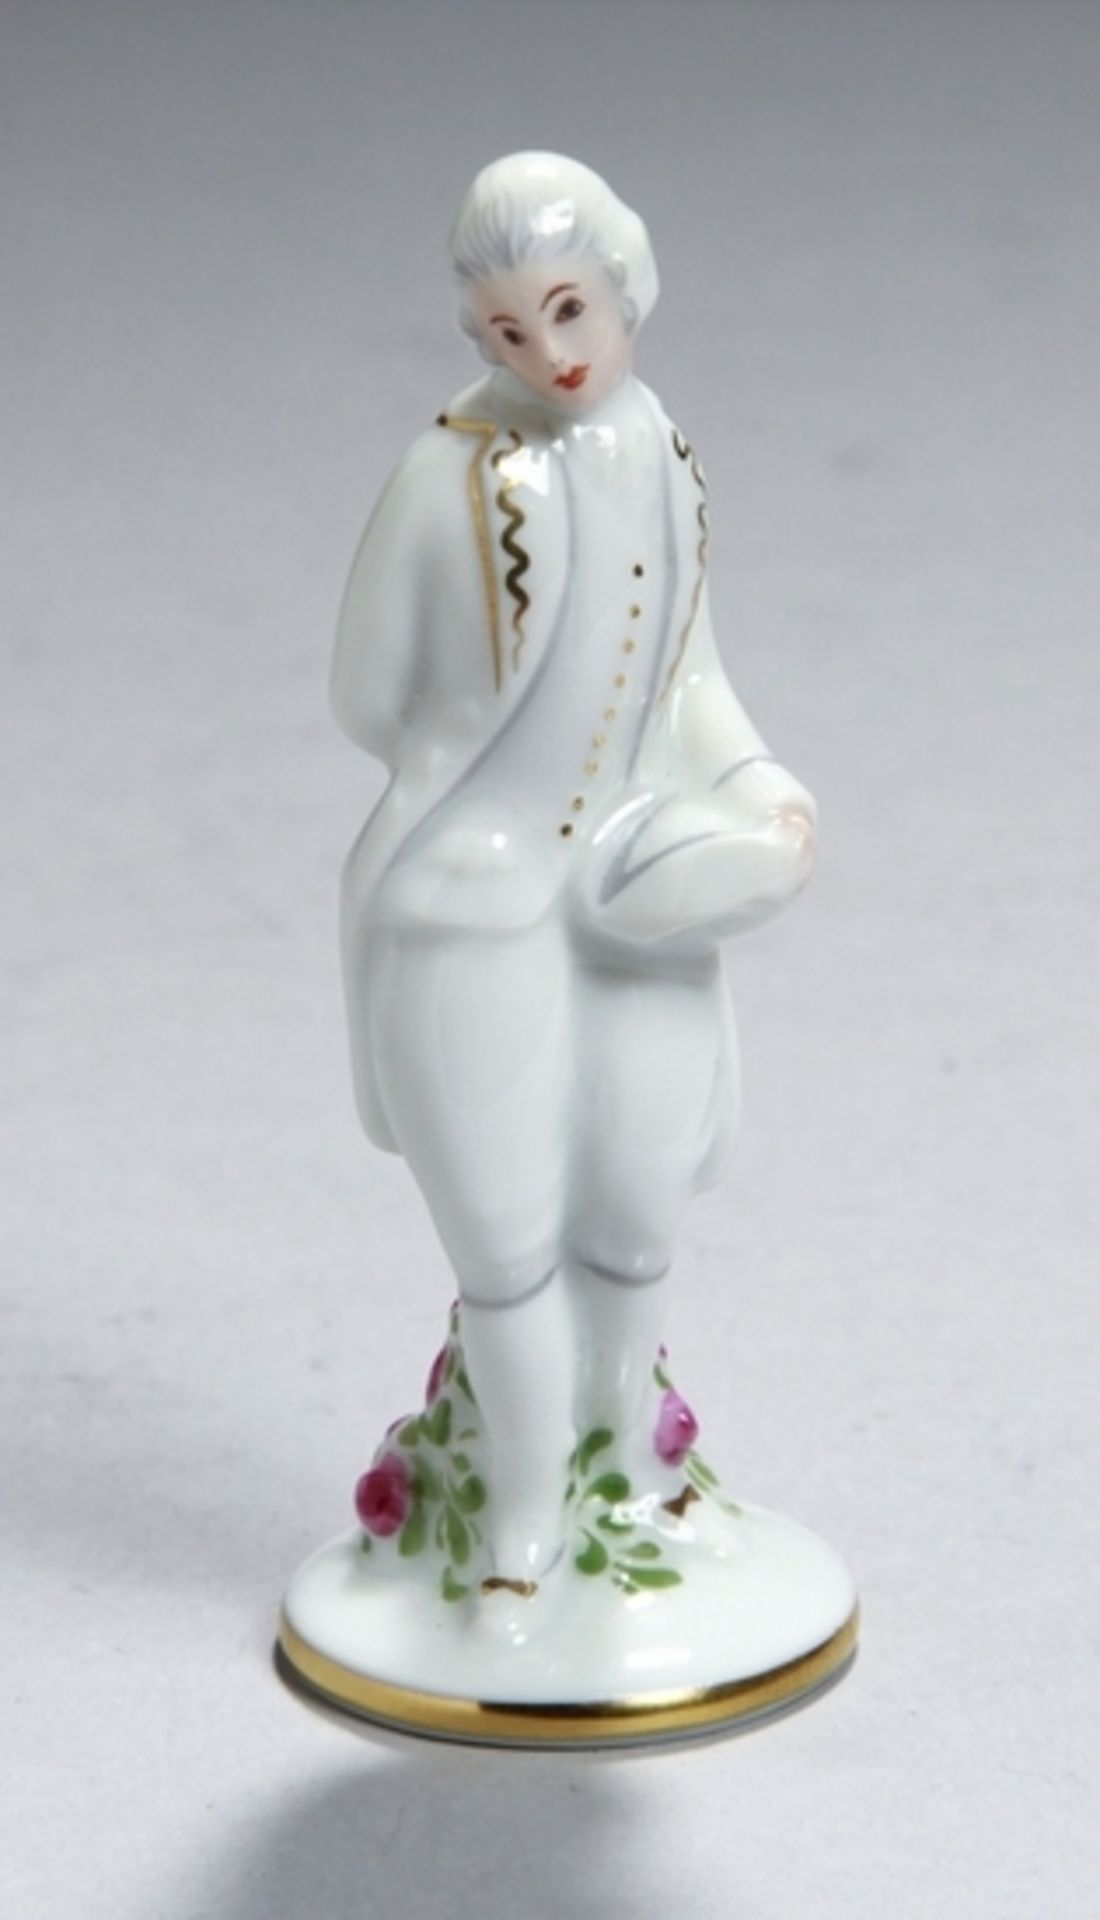 Porzellan-Miniaturfigur, "Kavalier", Augarten, Wien, 2. Hälfte 20. Jh., Entw.: MathildeJaksch